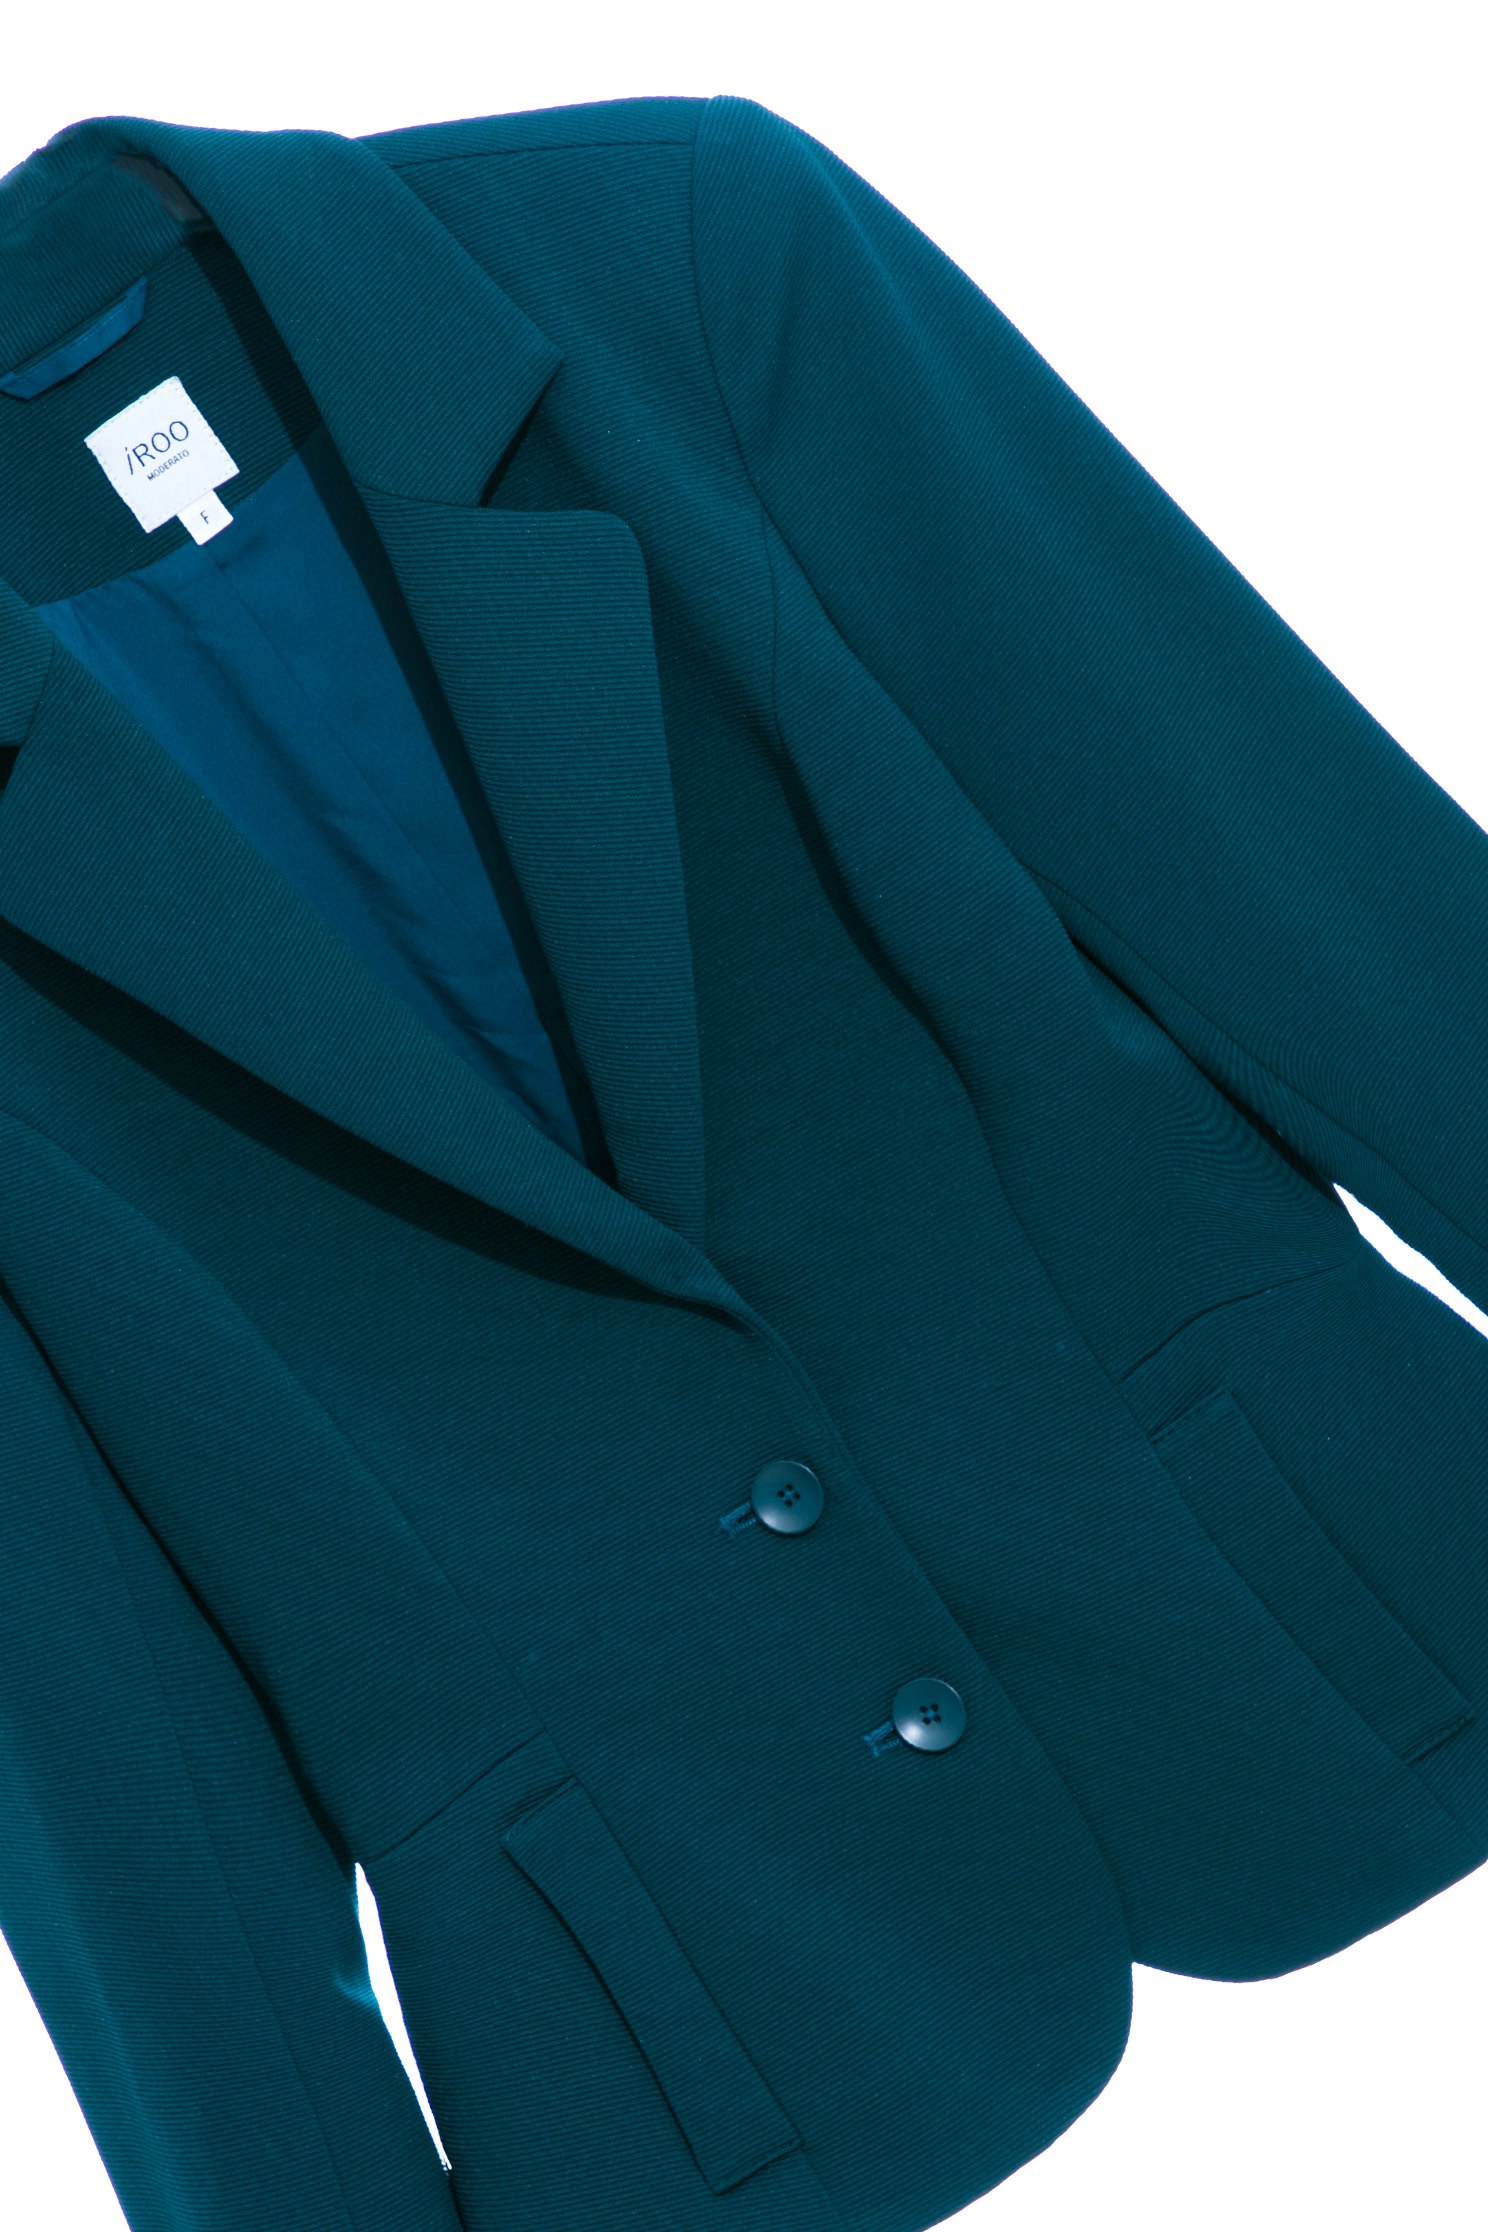 銅綠色切腰身外套,綠色 外套,翻領 外套,長袖 外套銅綠色切腰身外套,人氣商品,保暖特輯,外套,春夏穿搭,條紋,熱銷排行,西裝外套